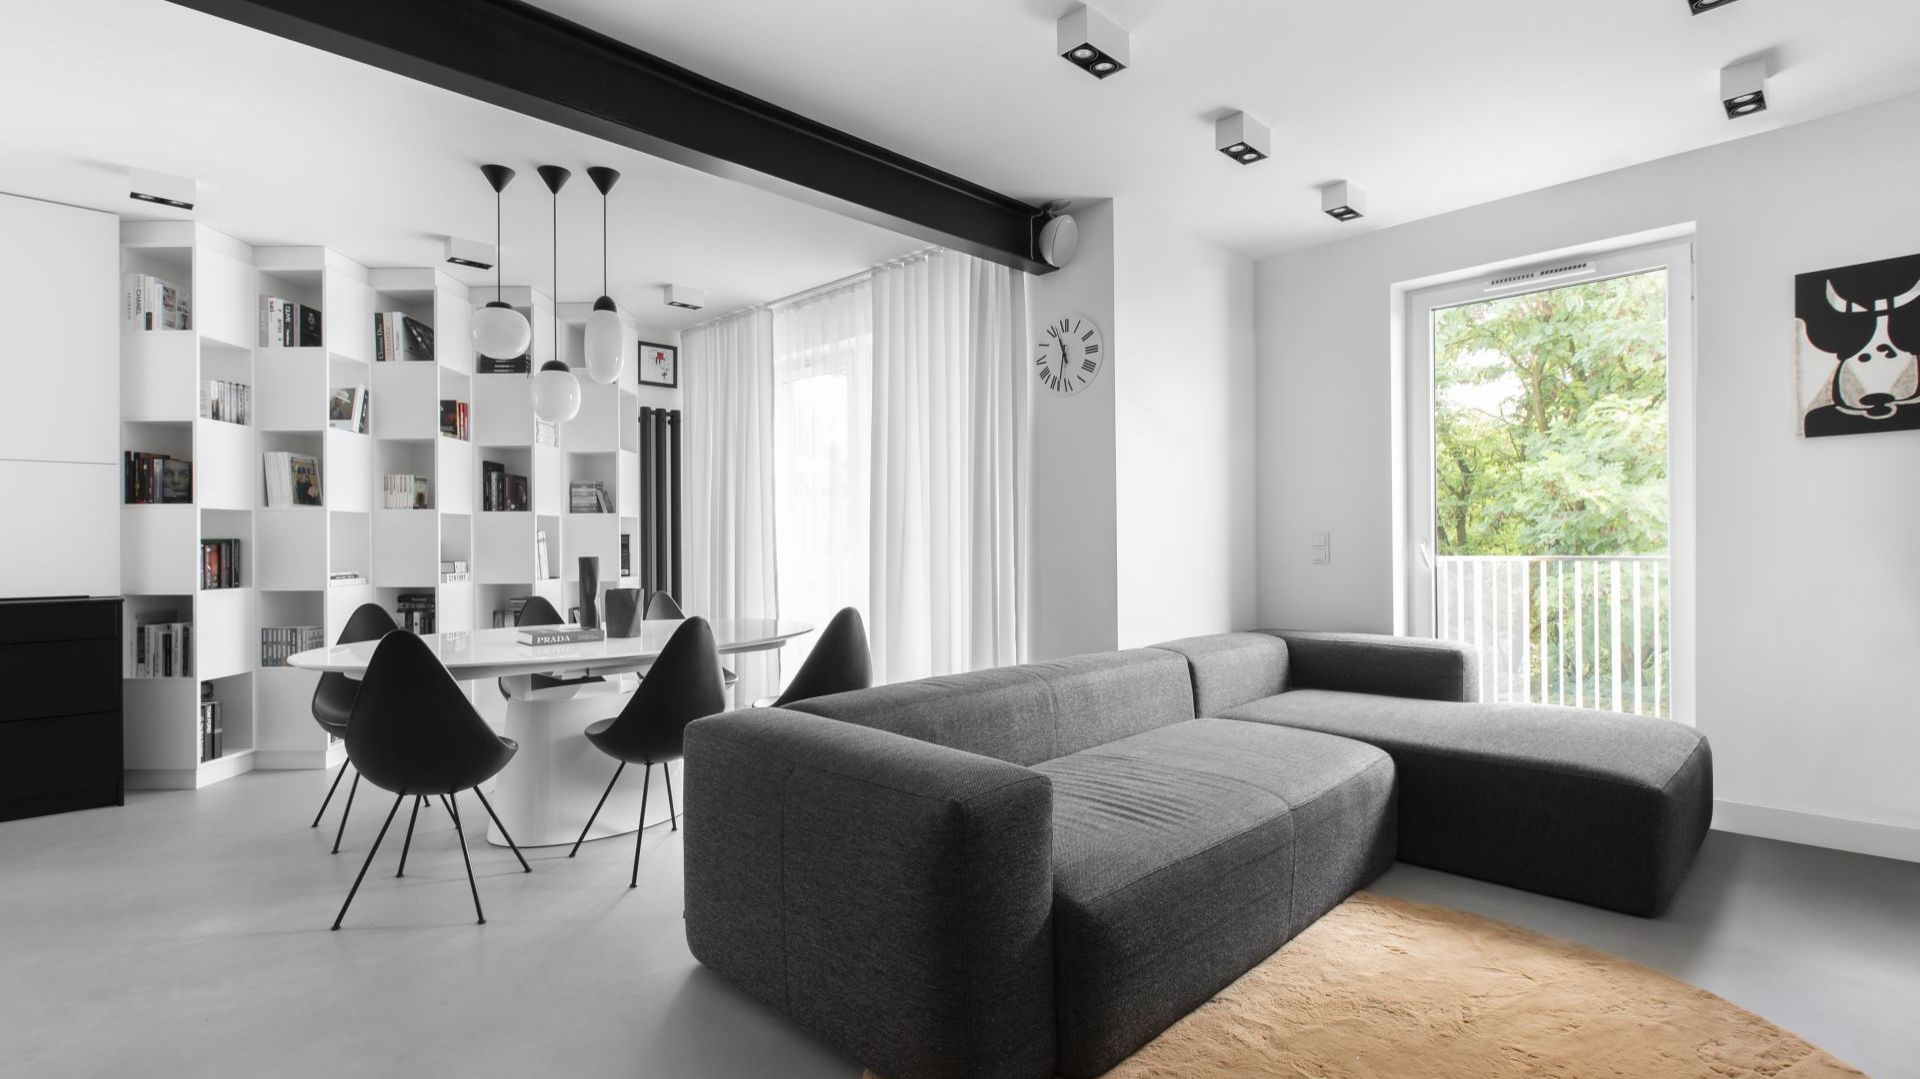 Czarno-białe mieszkanie z Krakowa. Styl minimalistyczny rządzi!